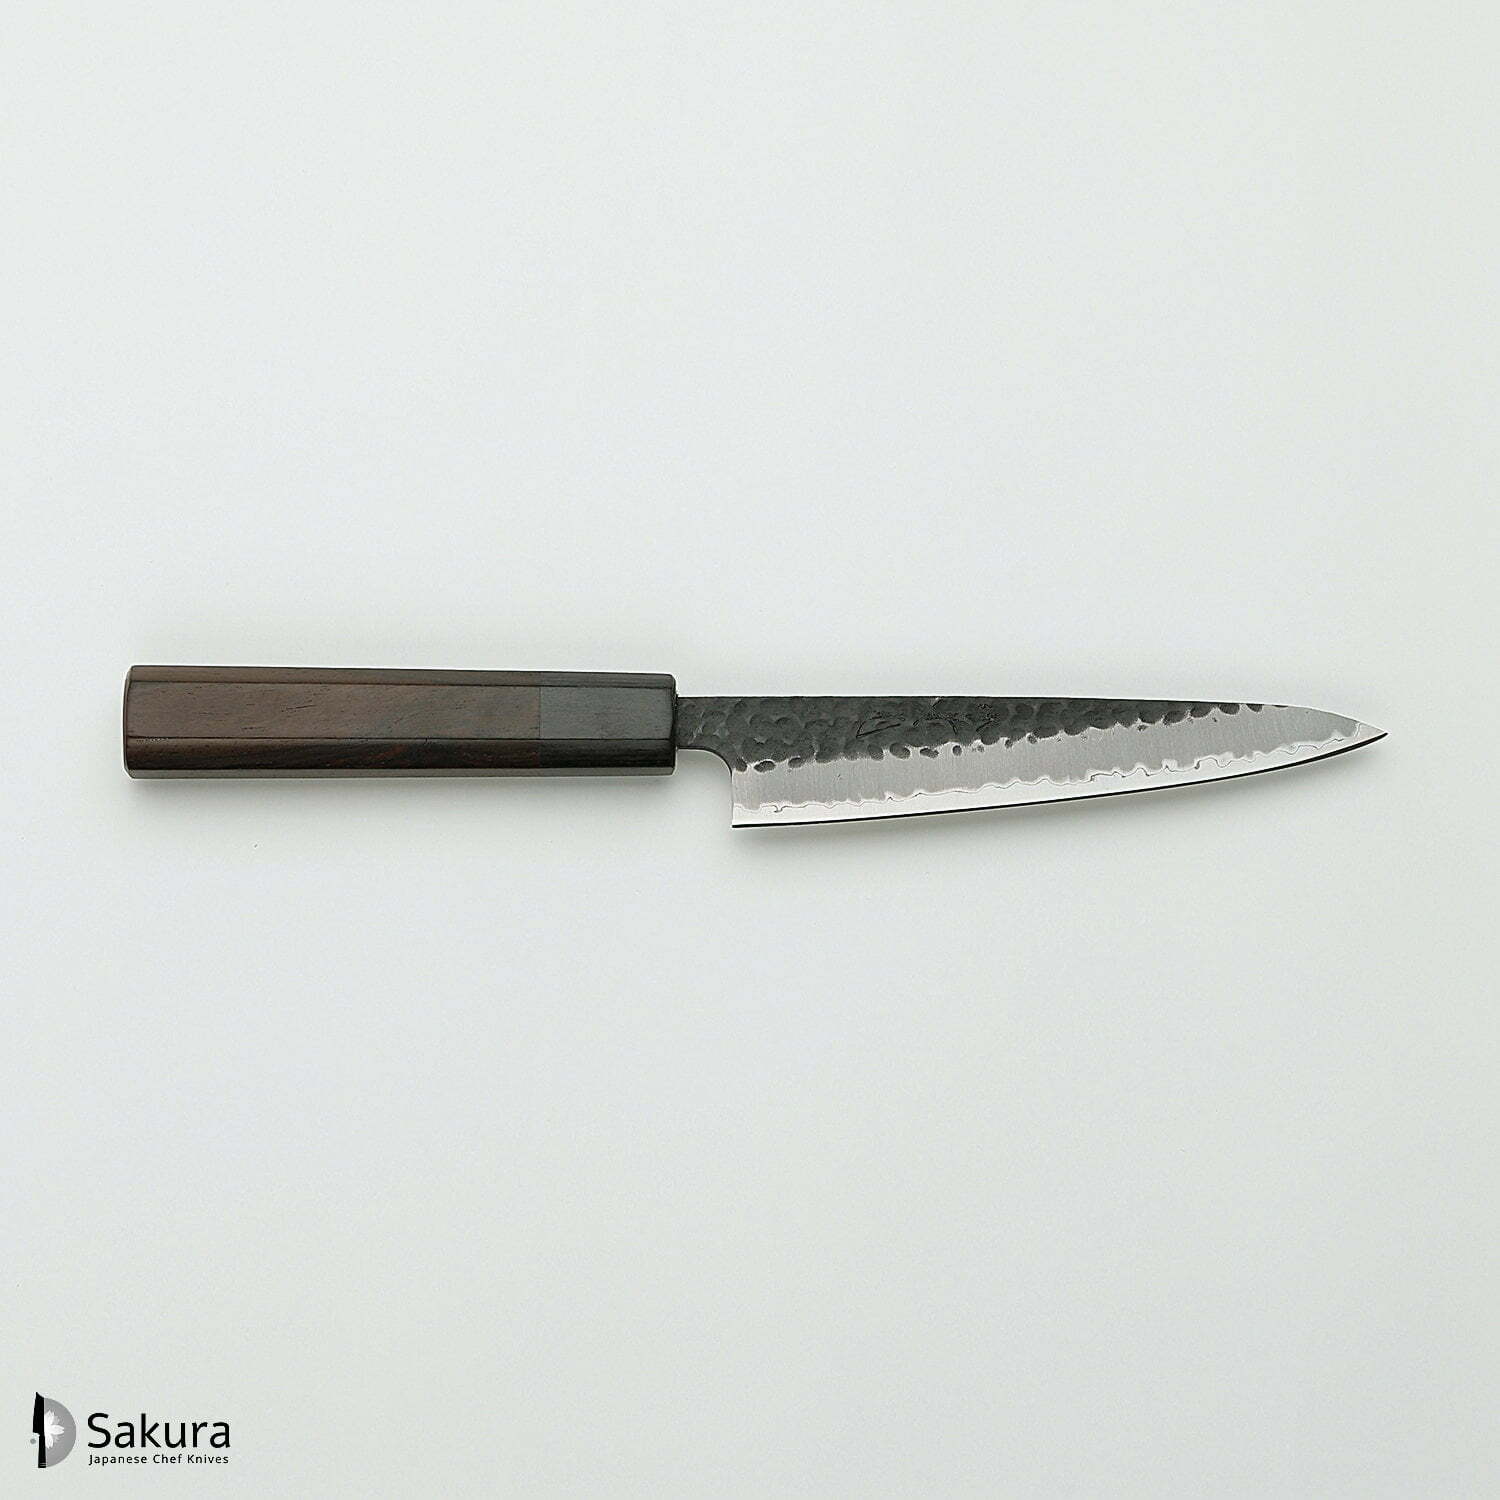 סכין עזר קטנה רב-תכליתית פֶּטִי 135מ״מ מחוזקת 3 שכבות: פלדת פחמן יפנית מתקדמת מסוג Aogami Super עטופה פלדת אל-חלד גימור קורואיצ׳י שחור עם ריקוע פטיש ג׳יקו סאקאיי יפן